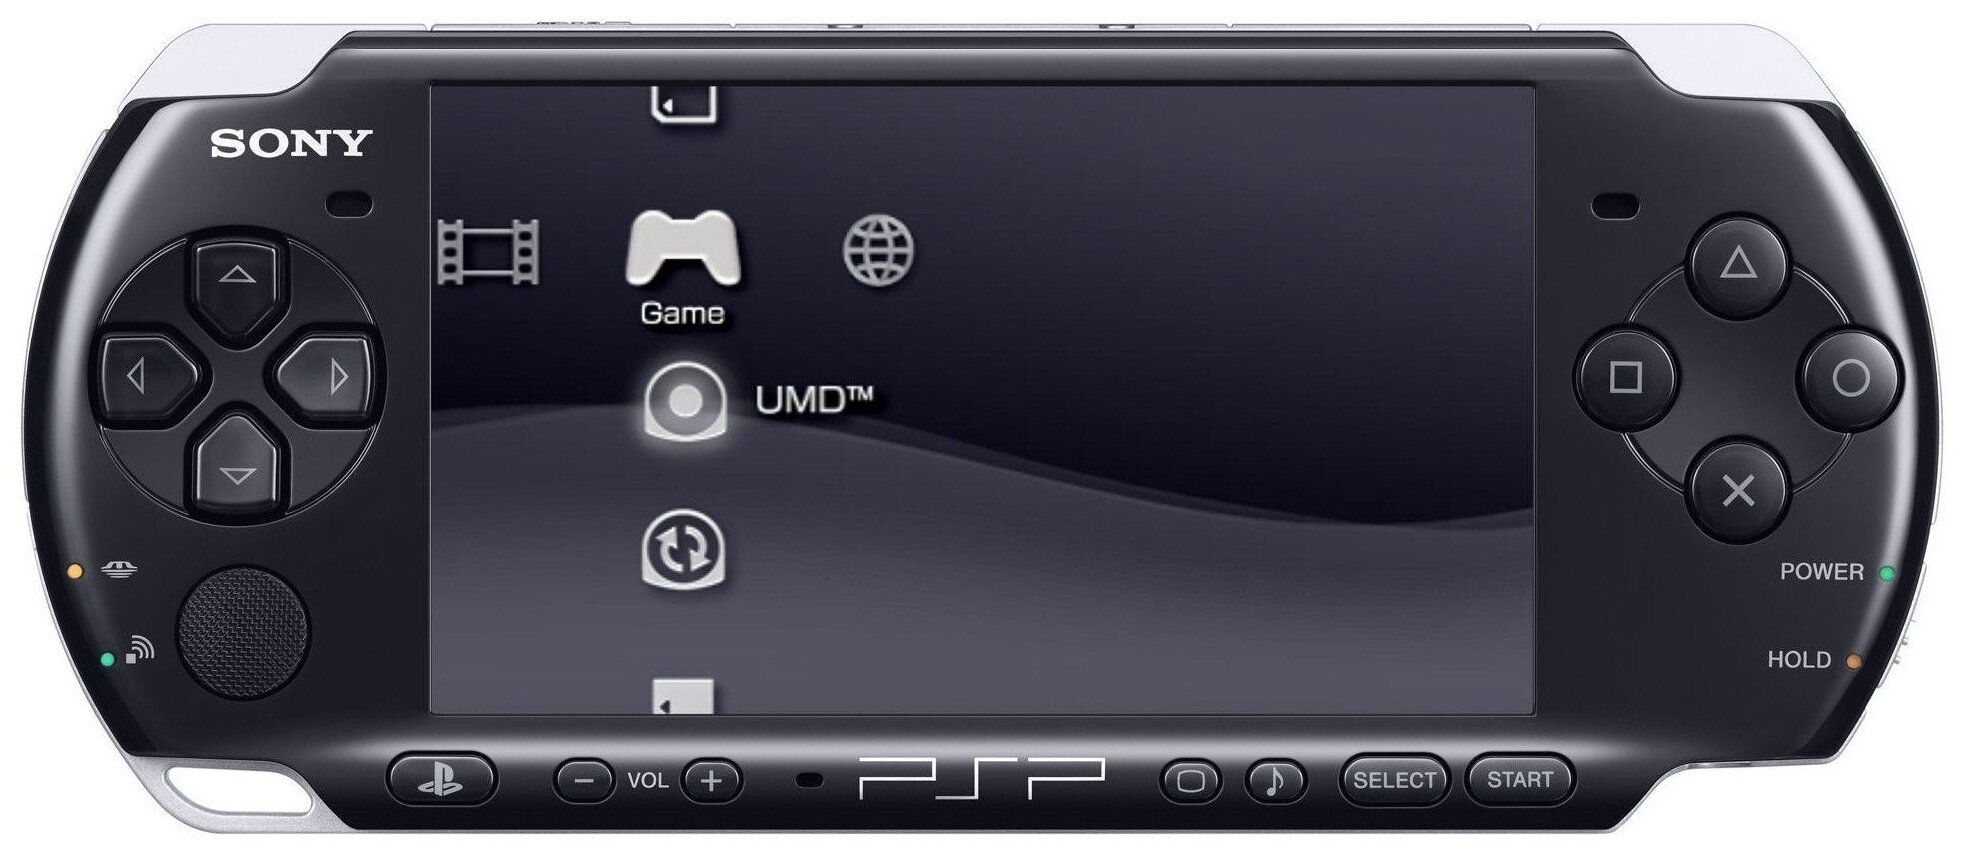 Игровая приставка Sony PlayStation Portable Bright (PSP-3000) SSD, 350 встроенных игр, черный